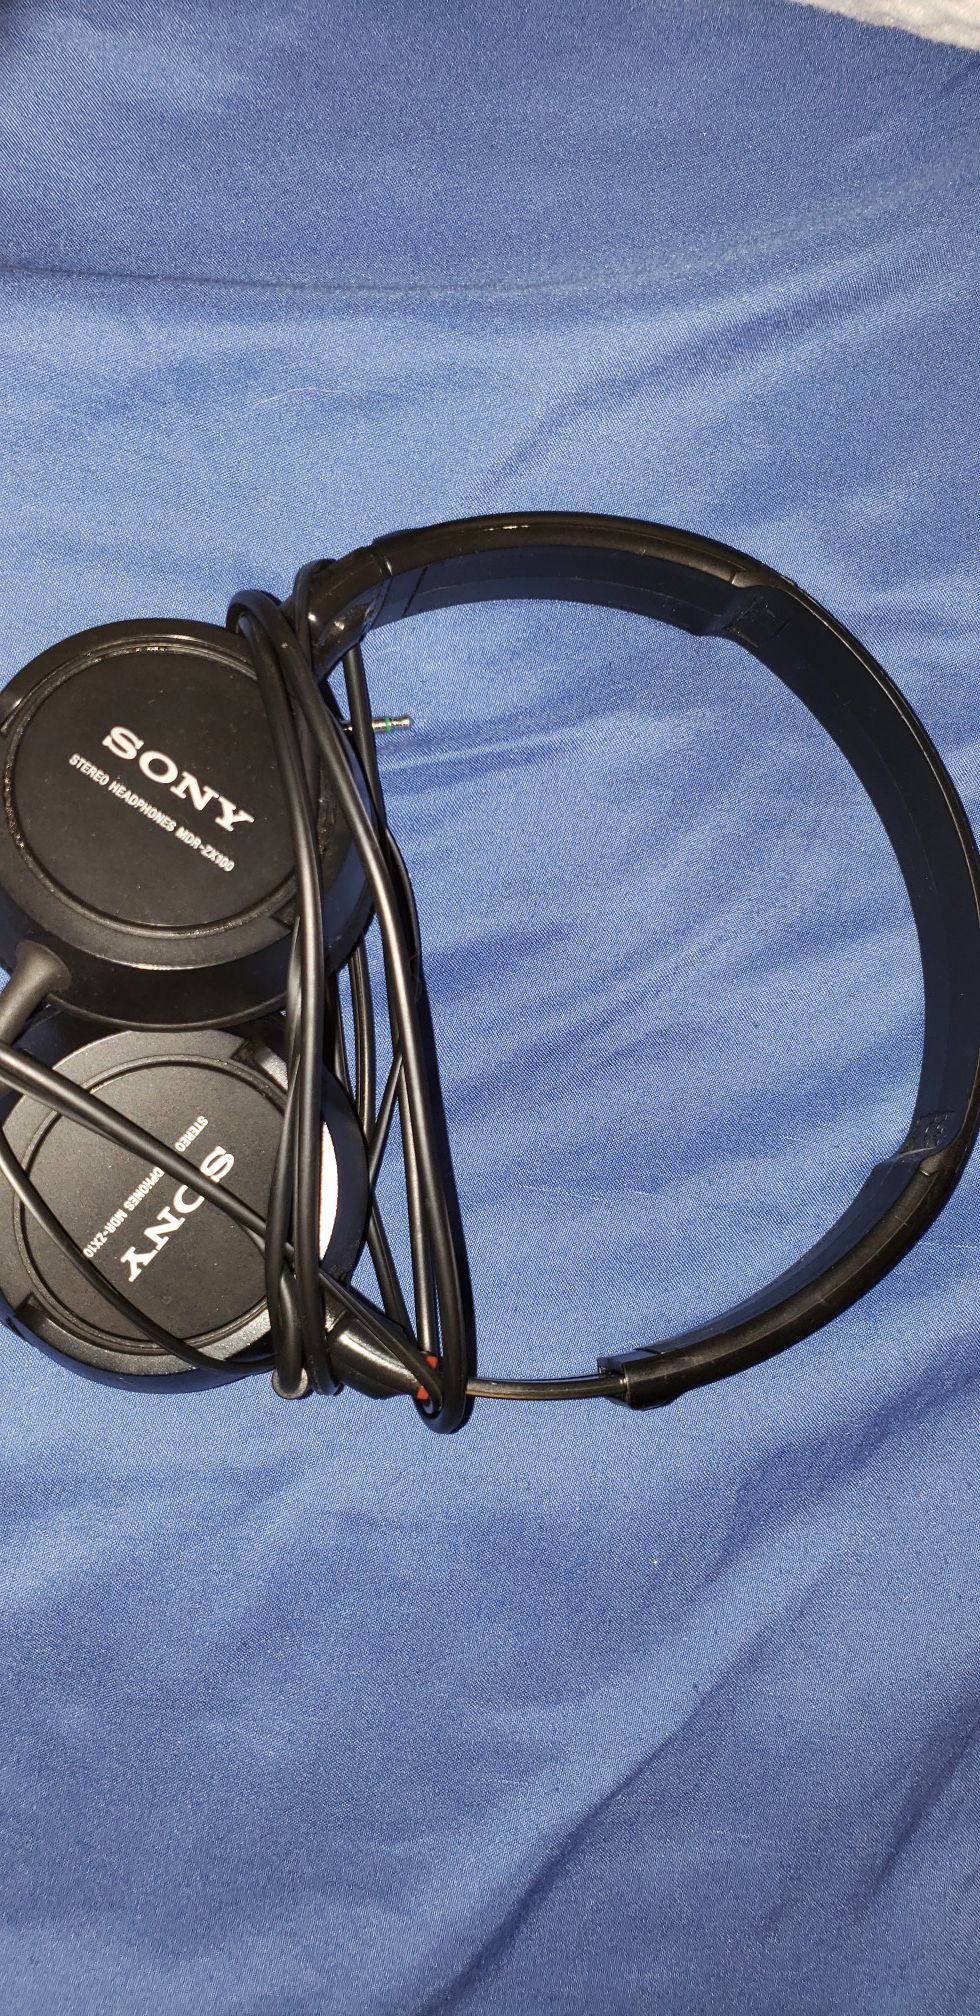 Sony and Tzumi headphones